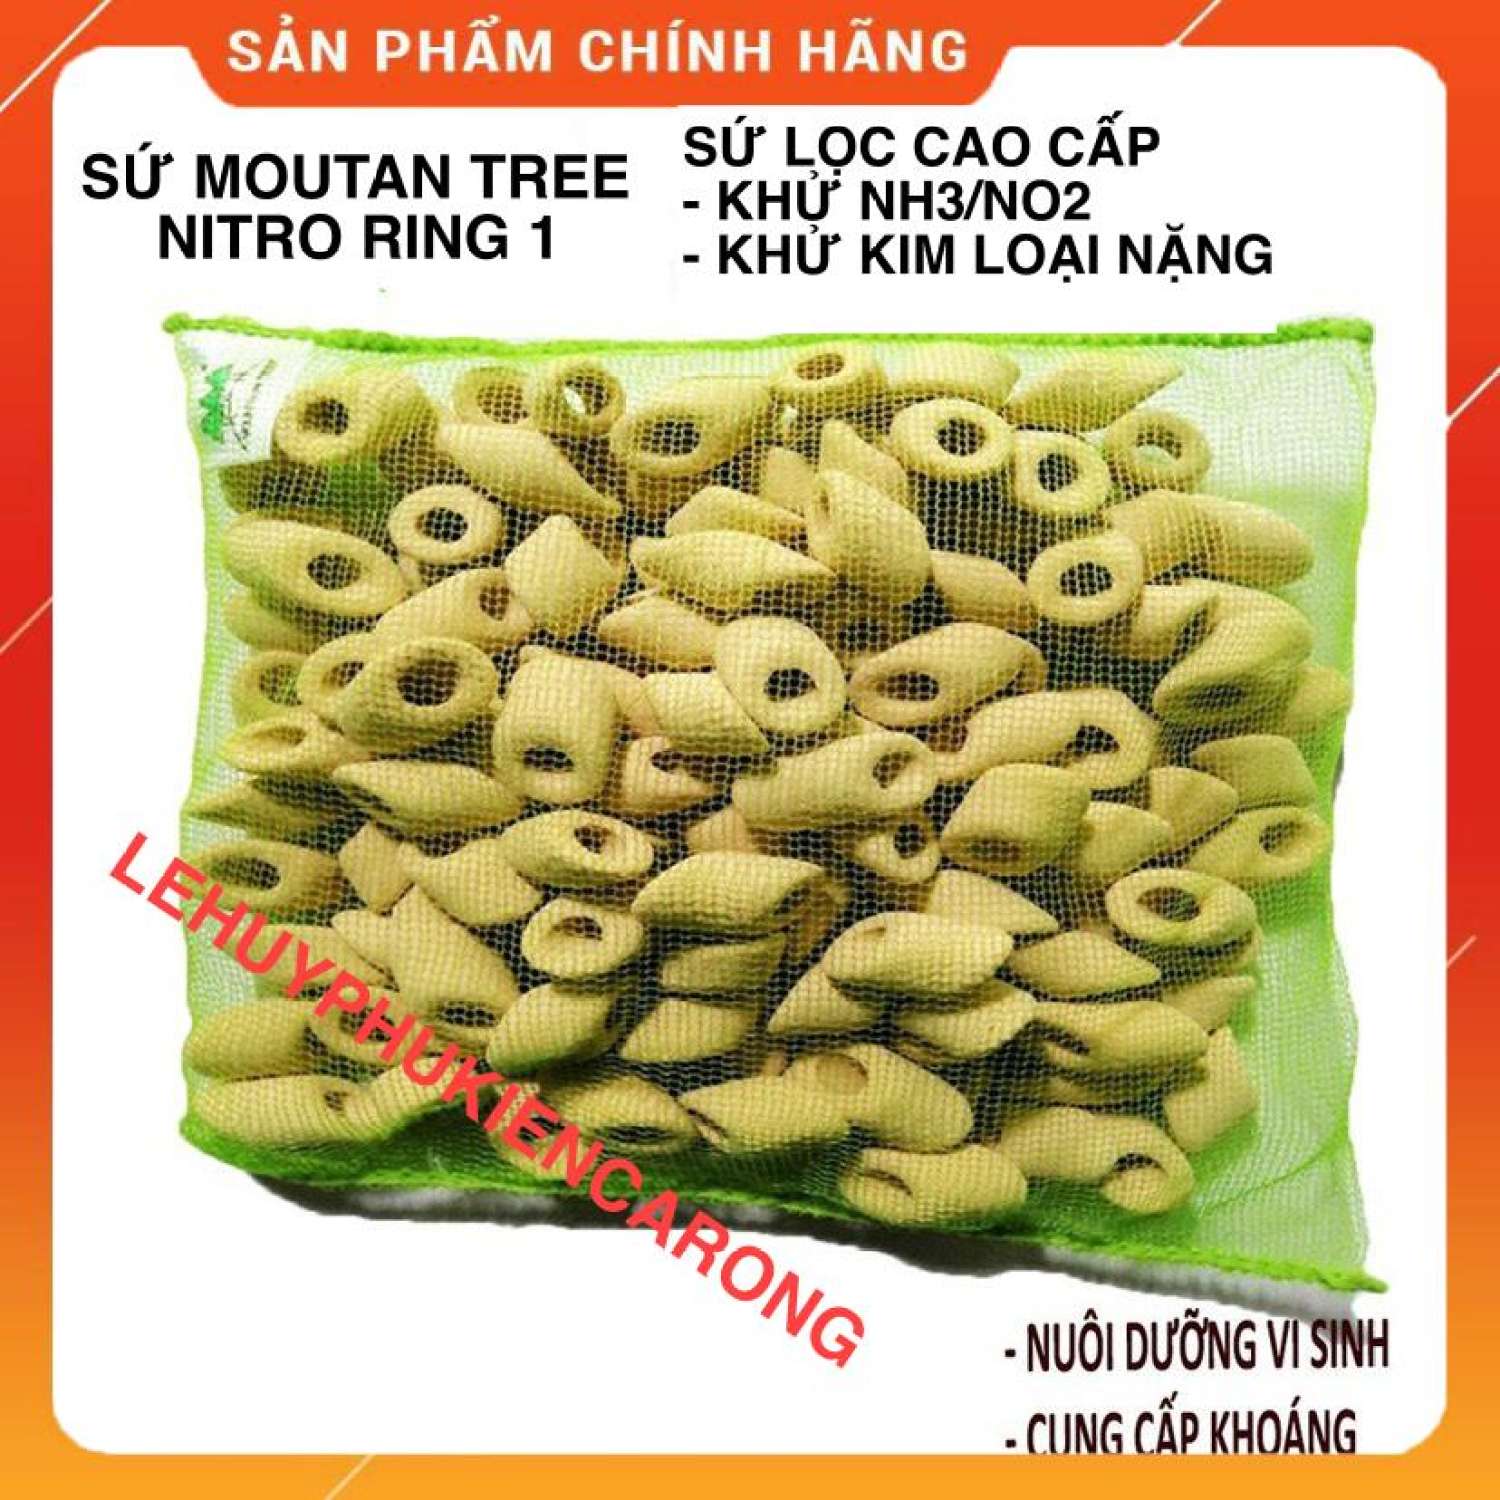 Sứ Lọc Bể Cá Nitro Ring - Sứ Lọc Cao Cấp Của Mountain Tree Khử NH3/NO2 Và Các Kim Loại Nặng